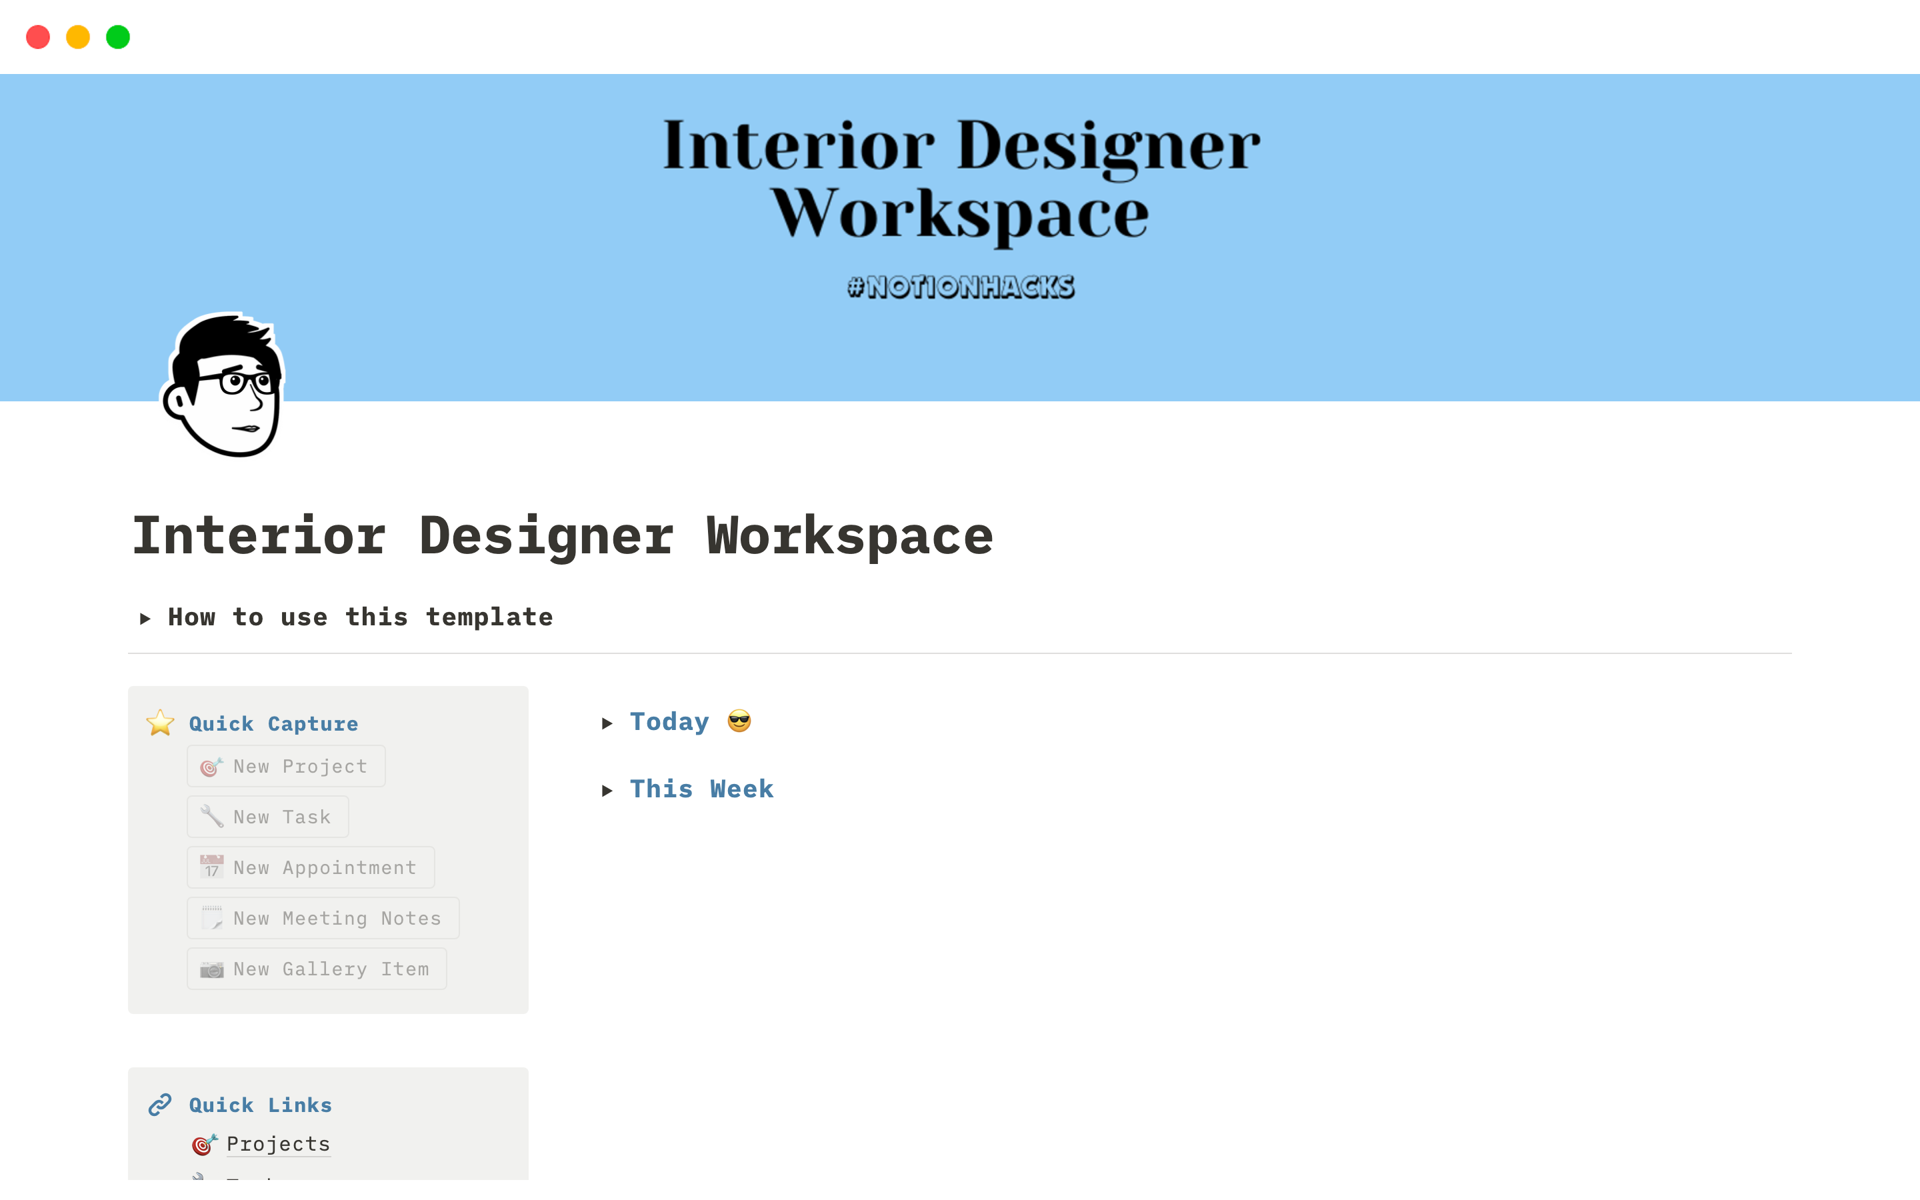 Uma prévia do modelo para Interior Designer Workspace